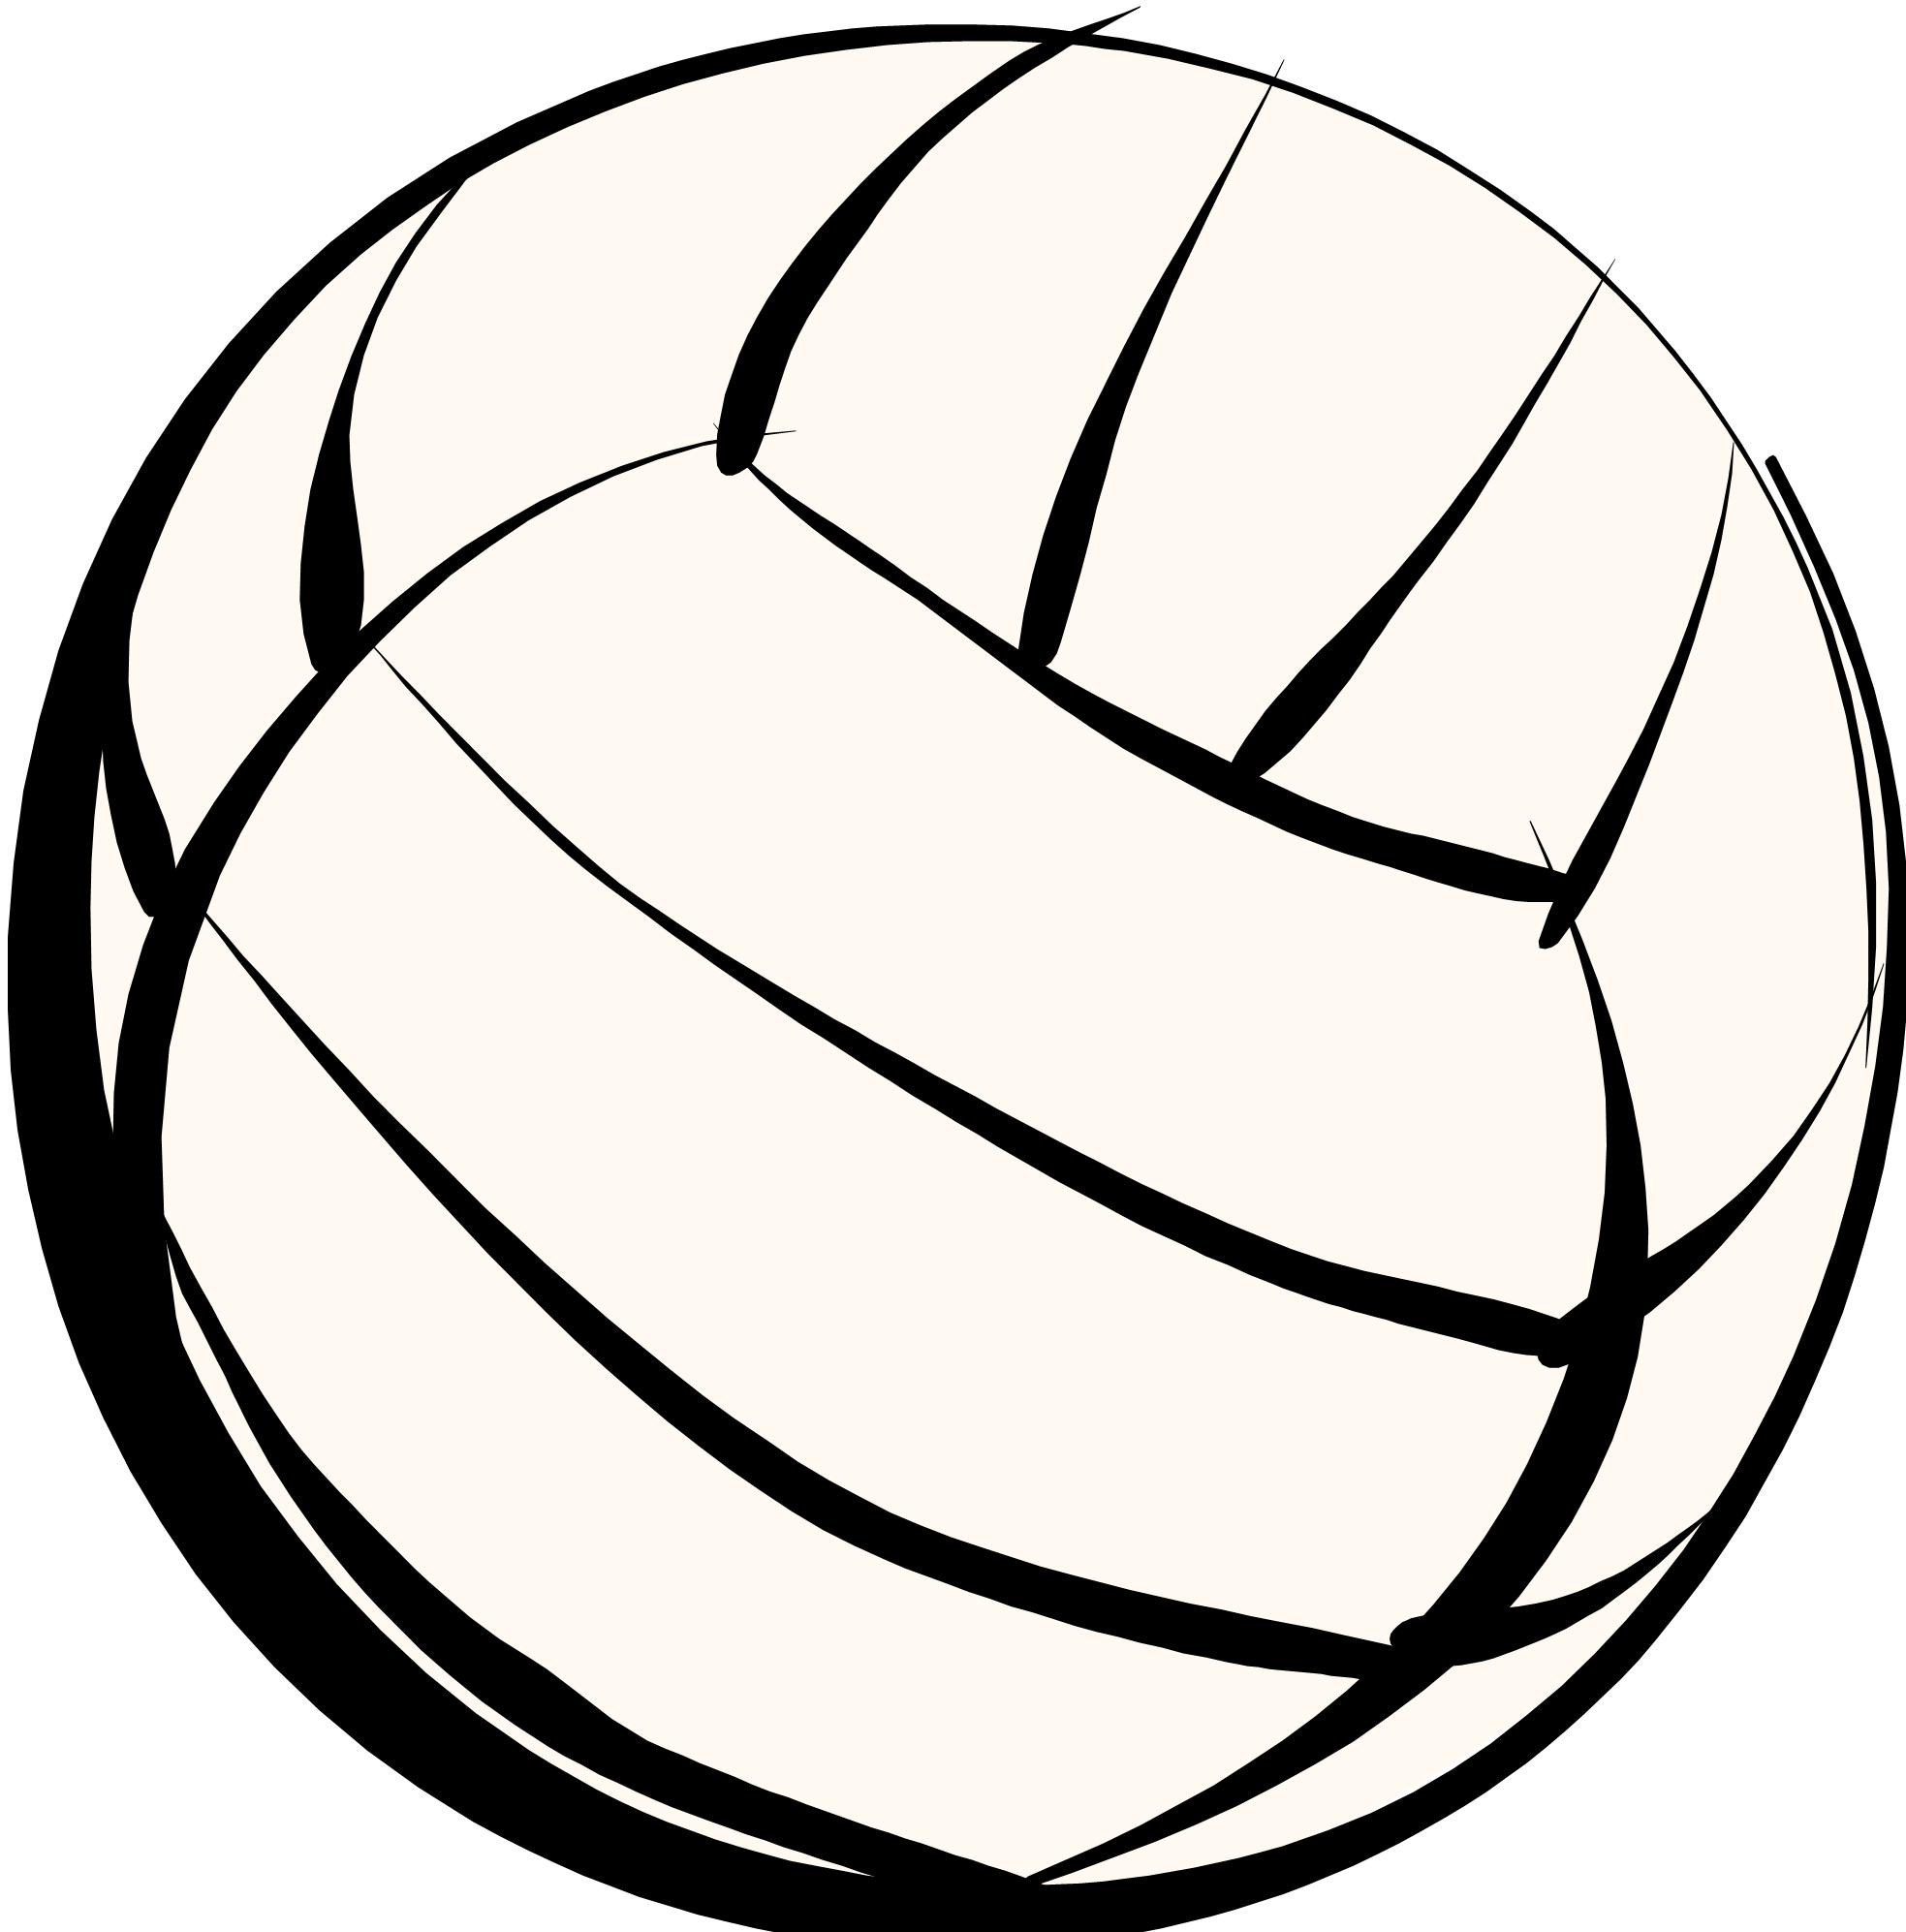 Cartoon Volleyball Net | Free Download Clip Art | Free Clip Art ...